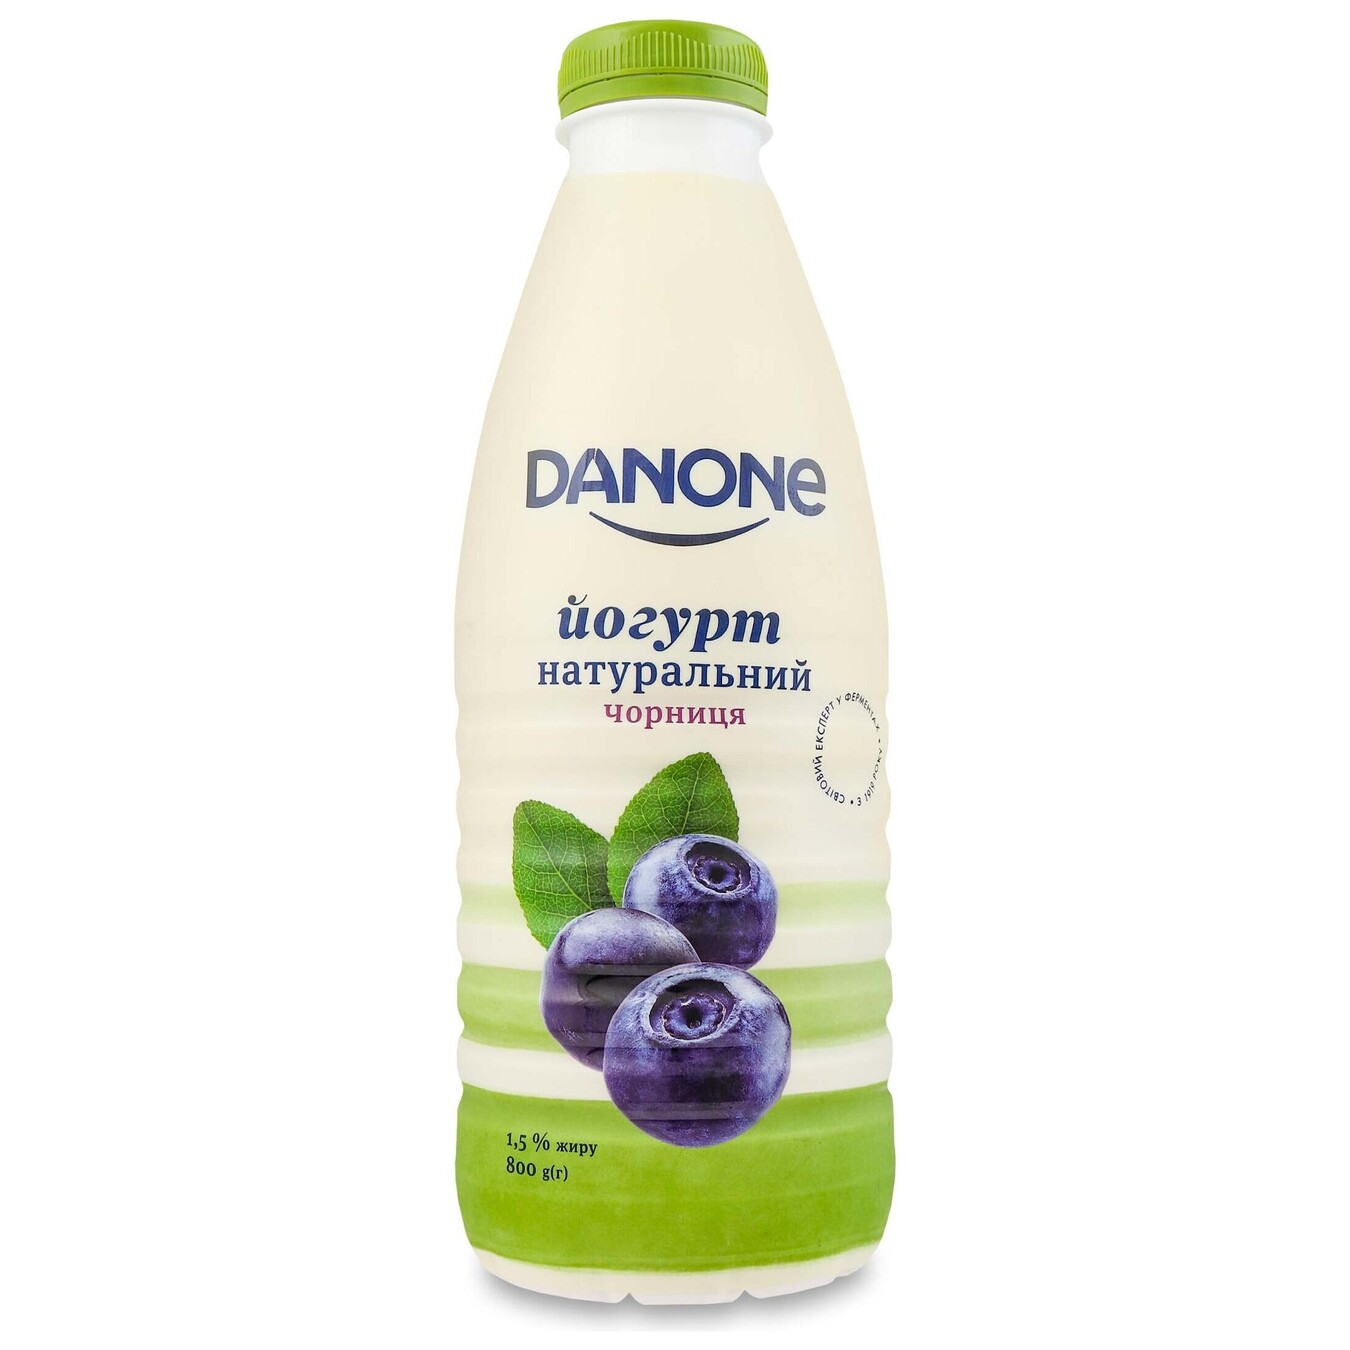 Danone yogurt blueberries drinking 1,5% PET 800g